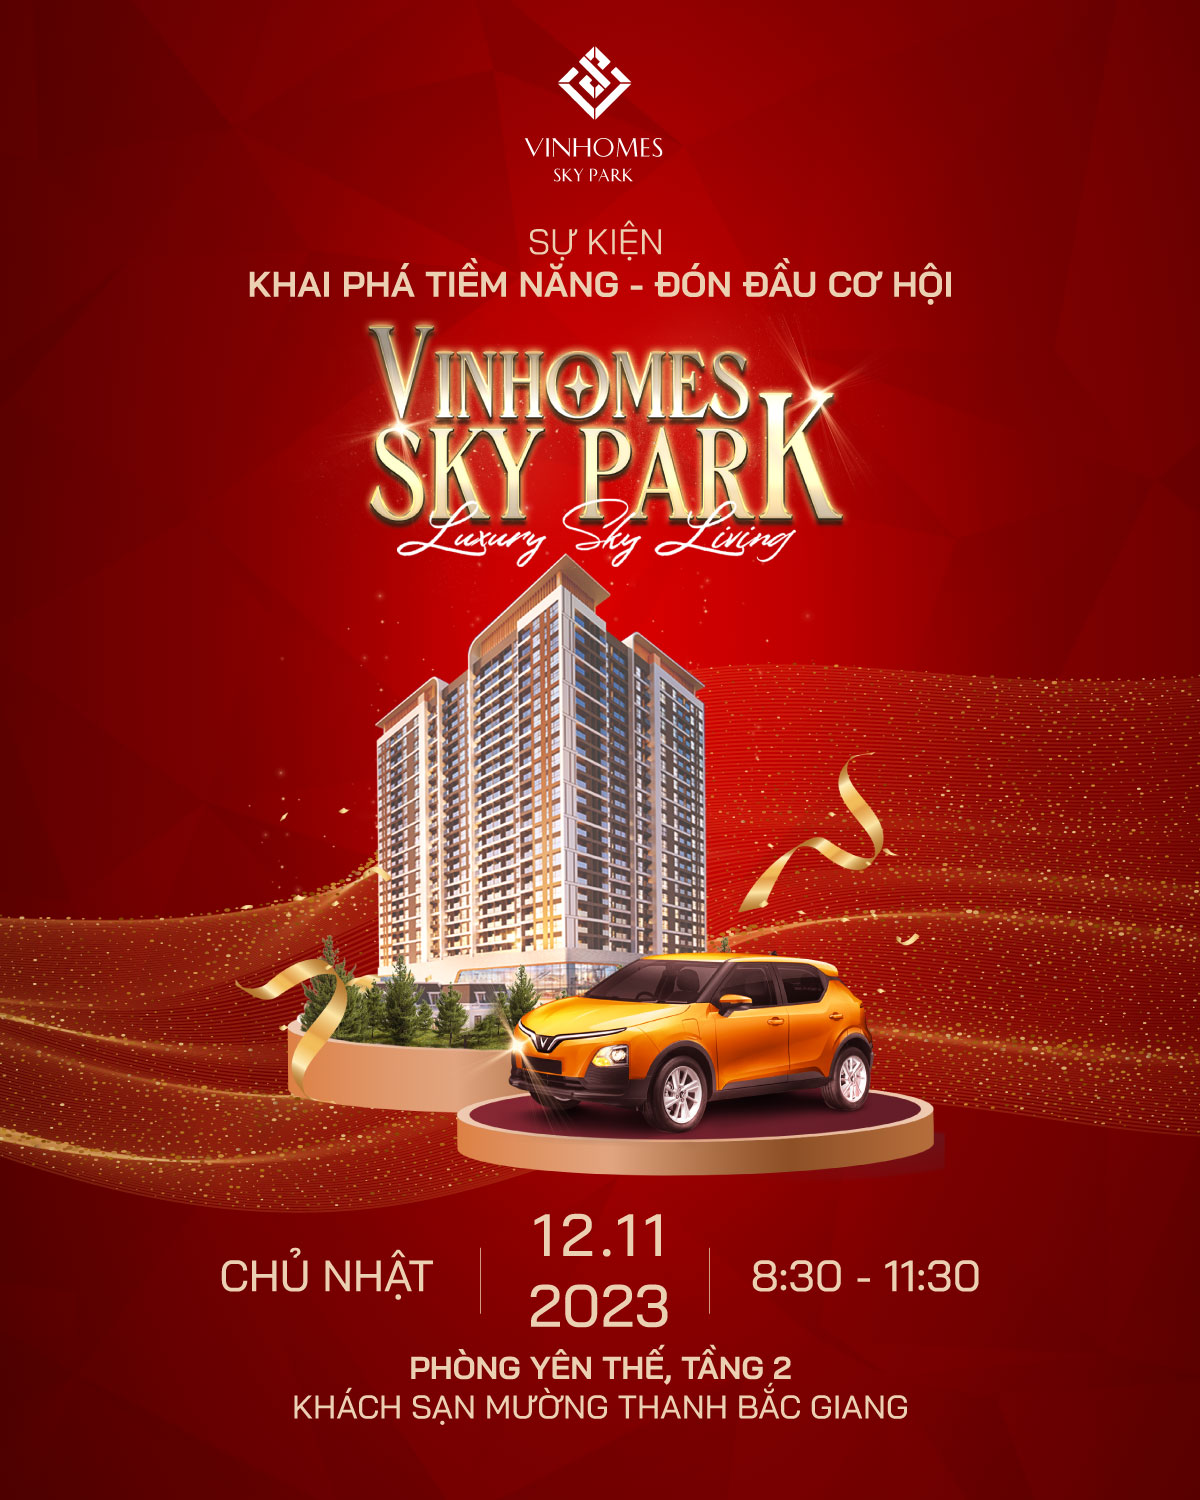 Sự kiện bốc thăm trúng thưởng xe VinFast dành cho khách hàng mua nhà Vinhomes Sky Park vào ngày 12/11 sắp tới